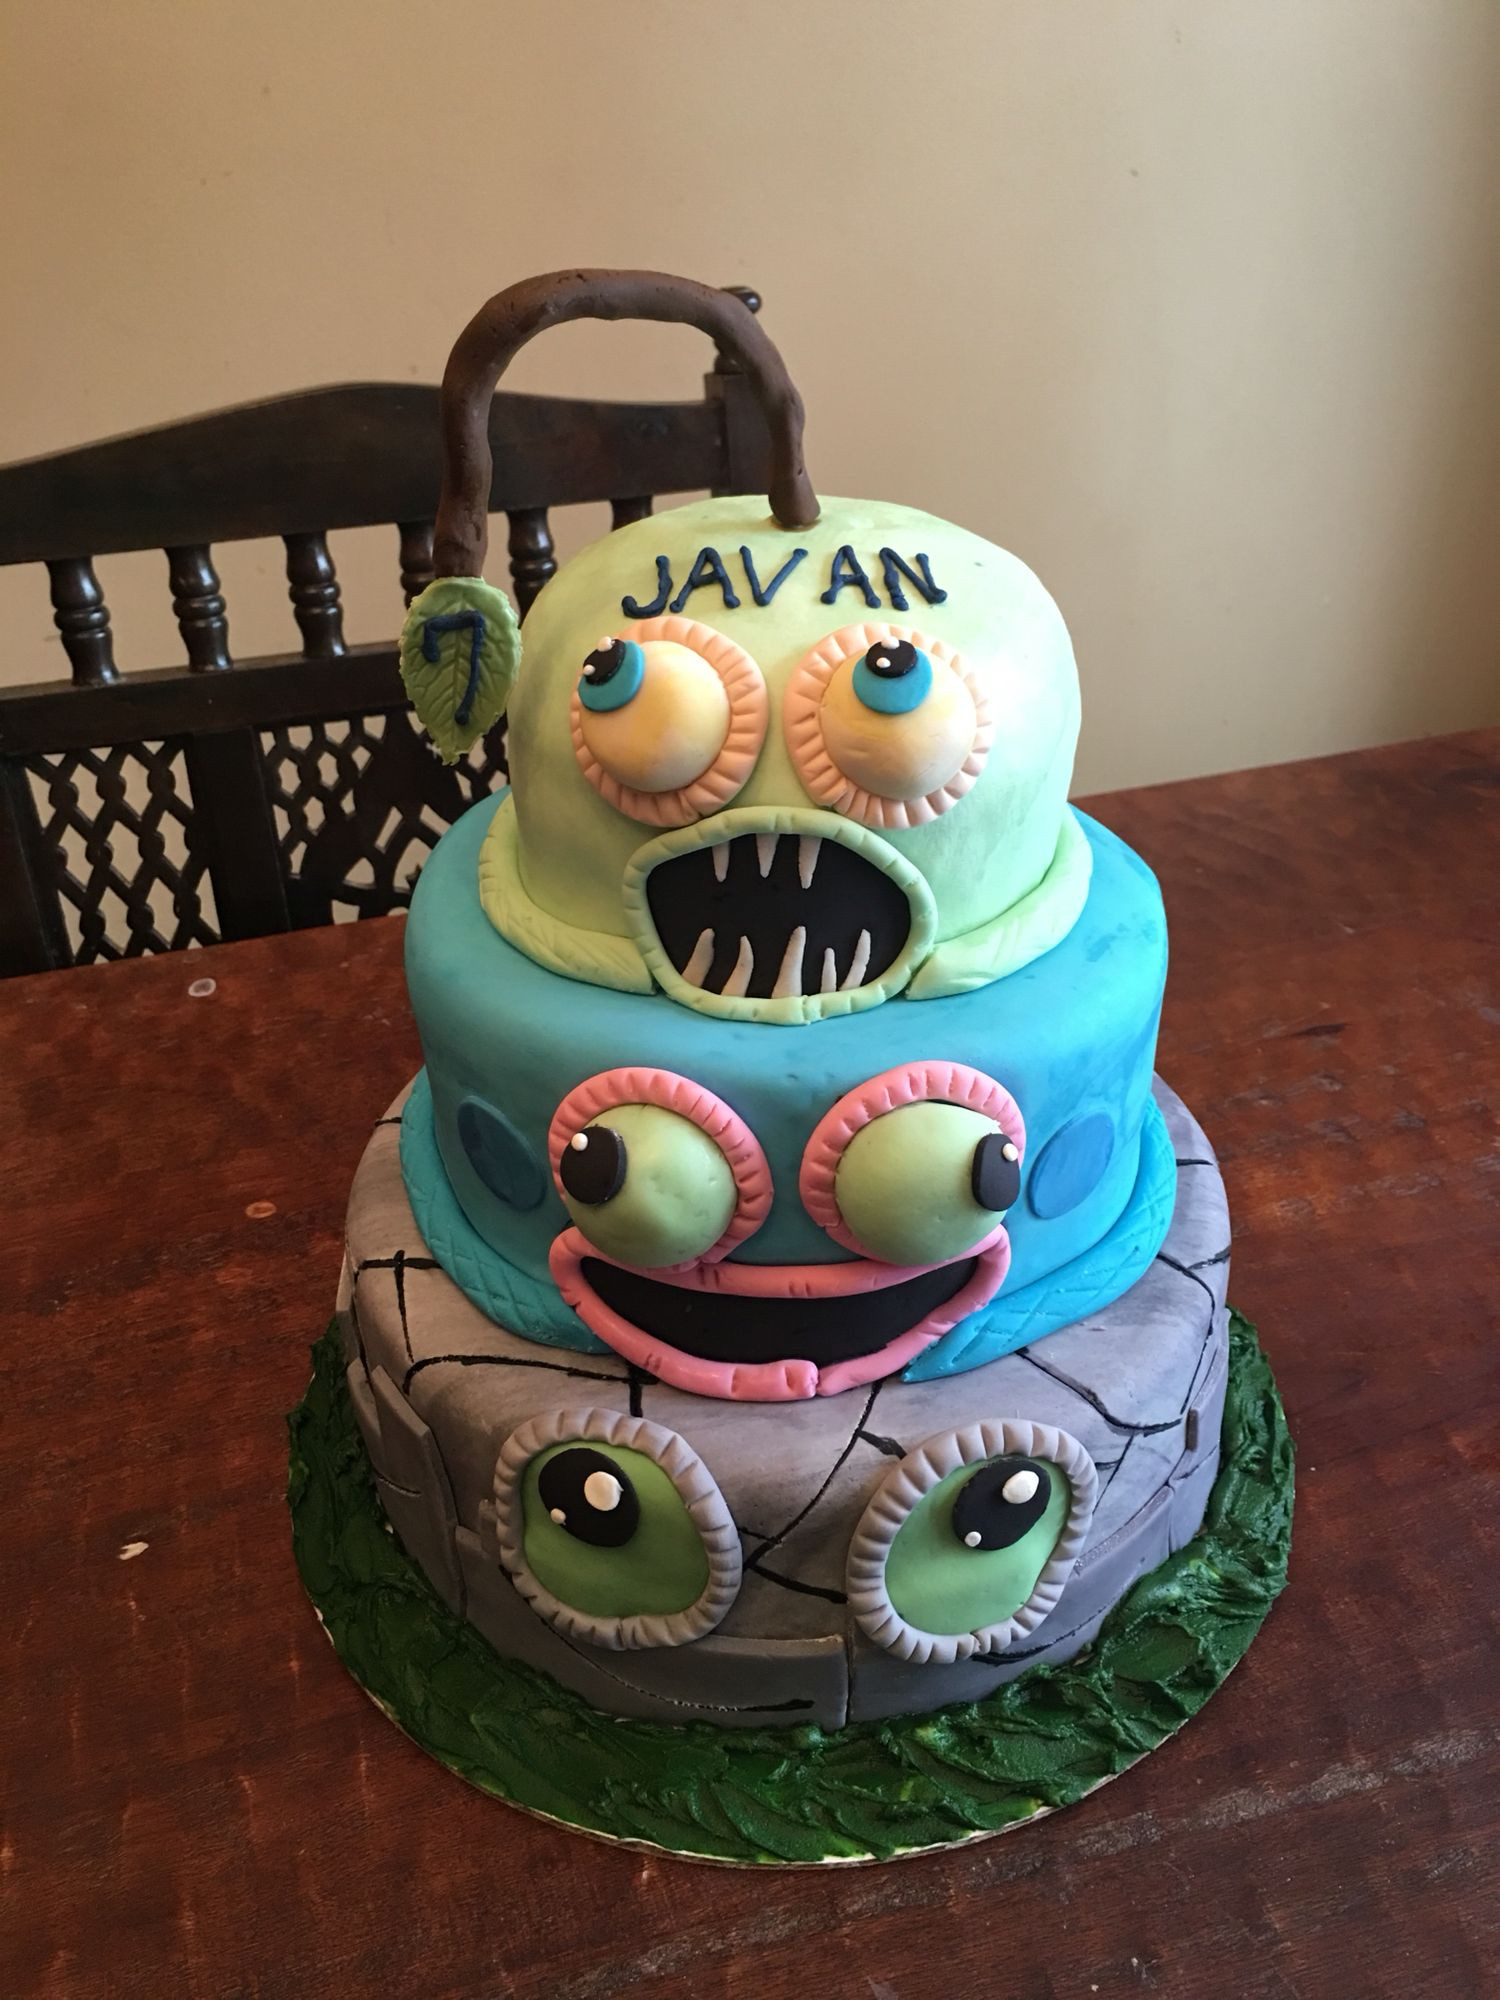 Singing Birthday Cake
 Javan s My Singing Monsters cake in 2019